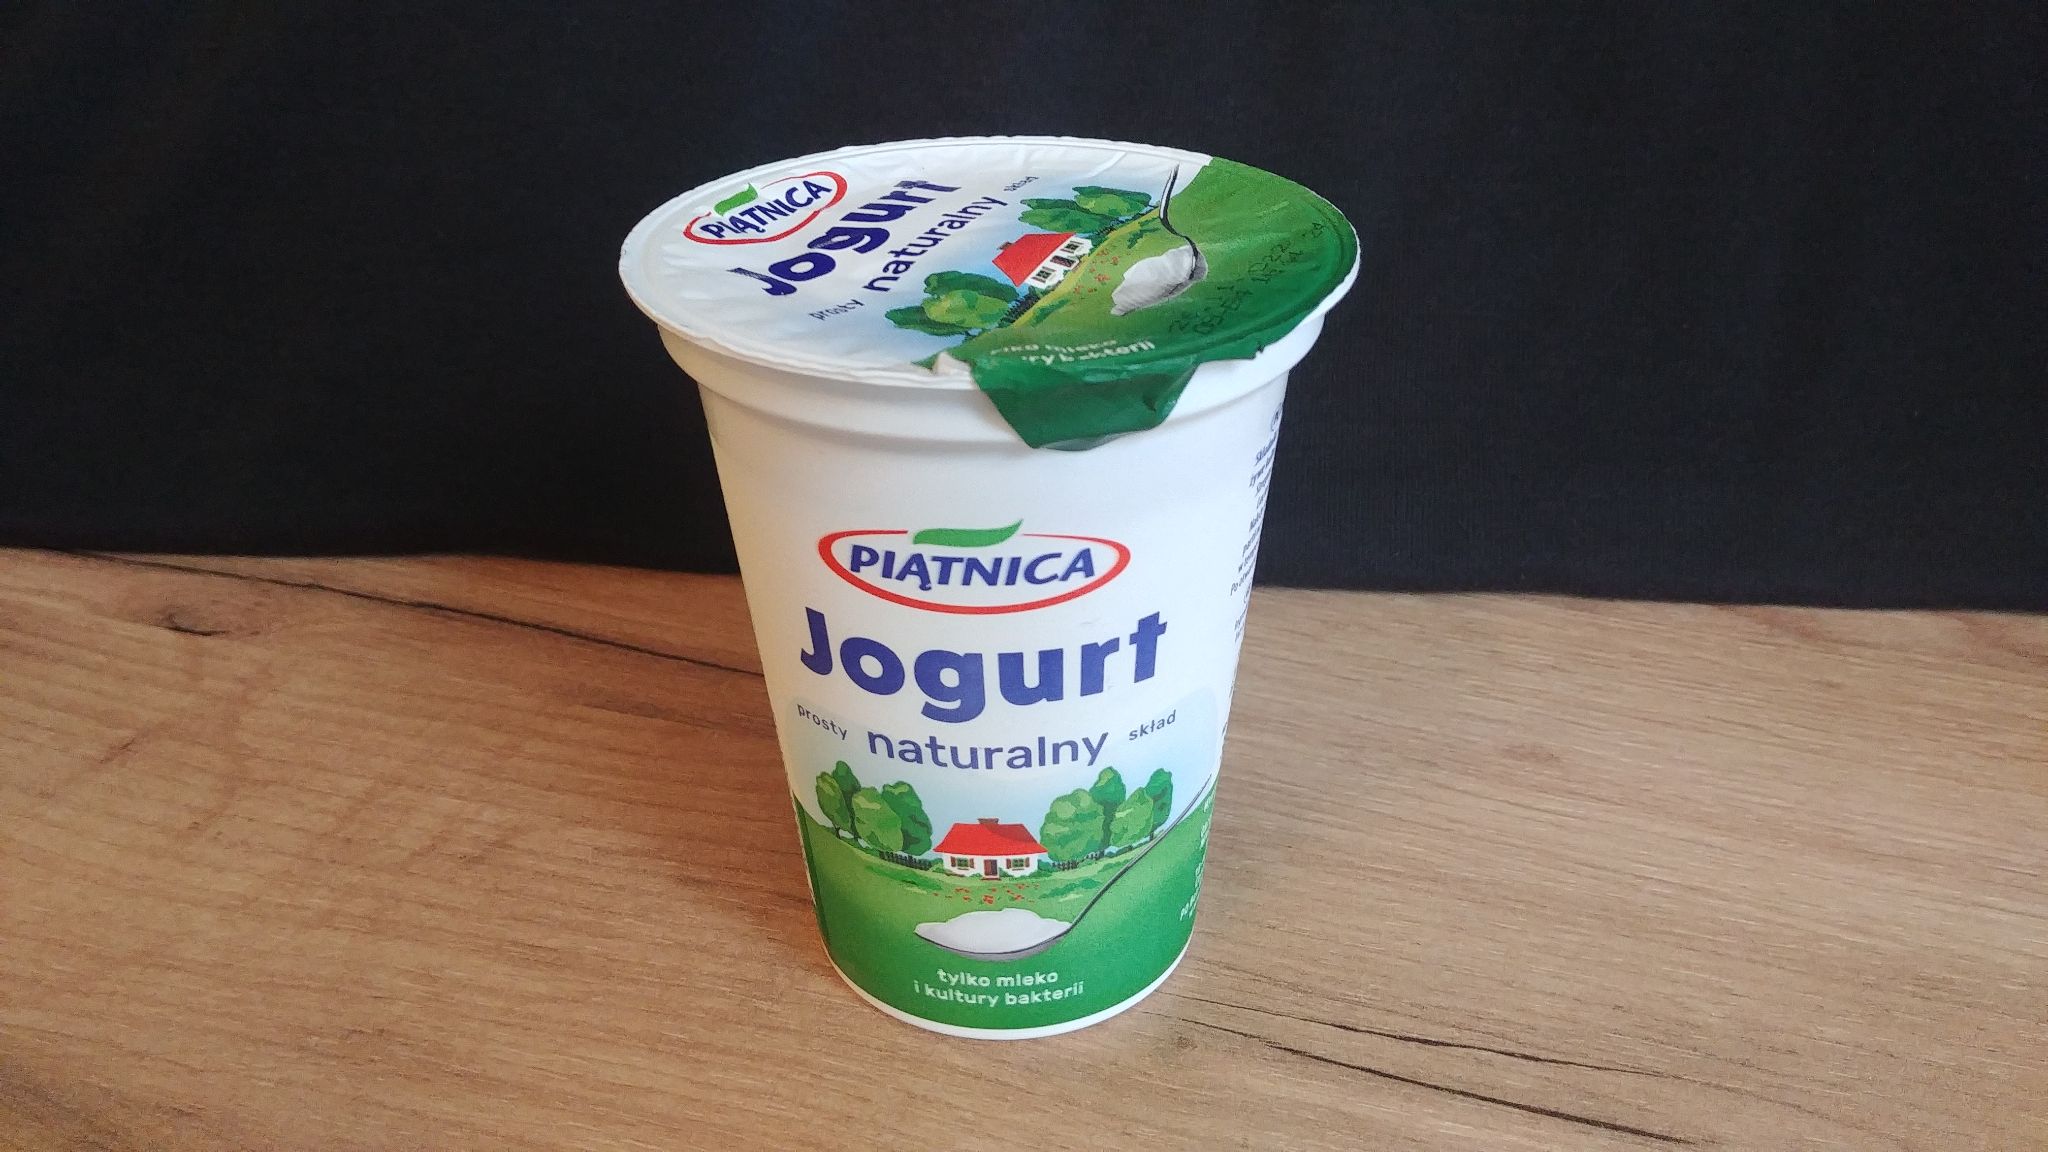 jogurt naturalny piątnica